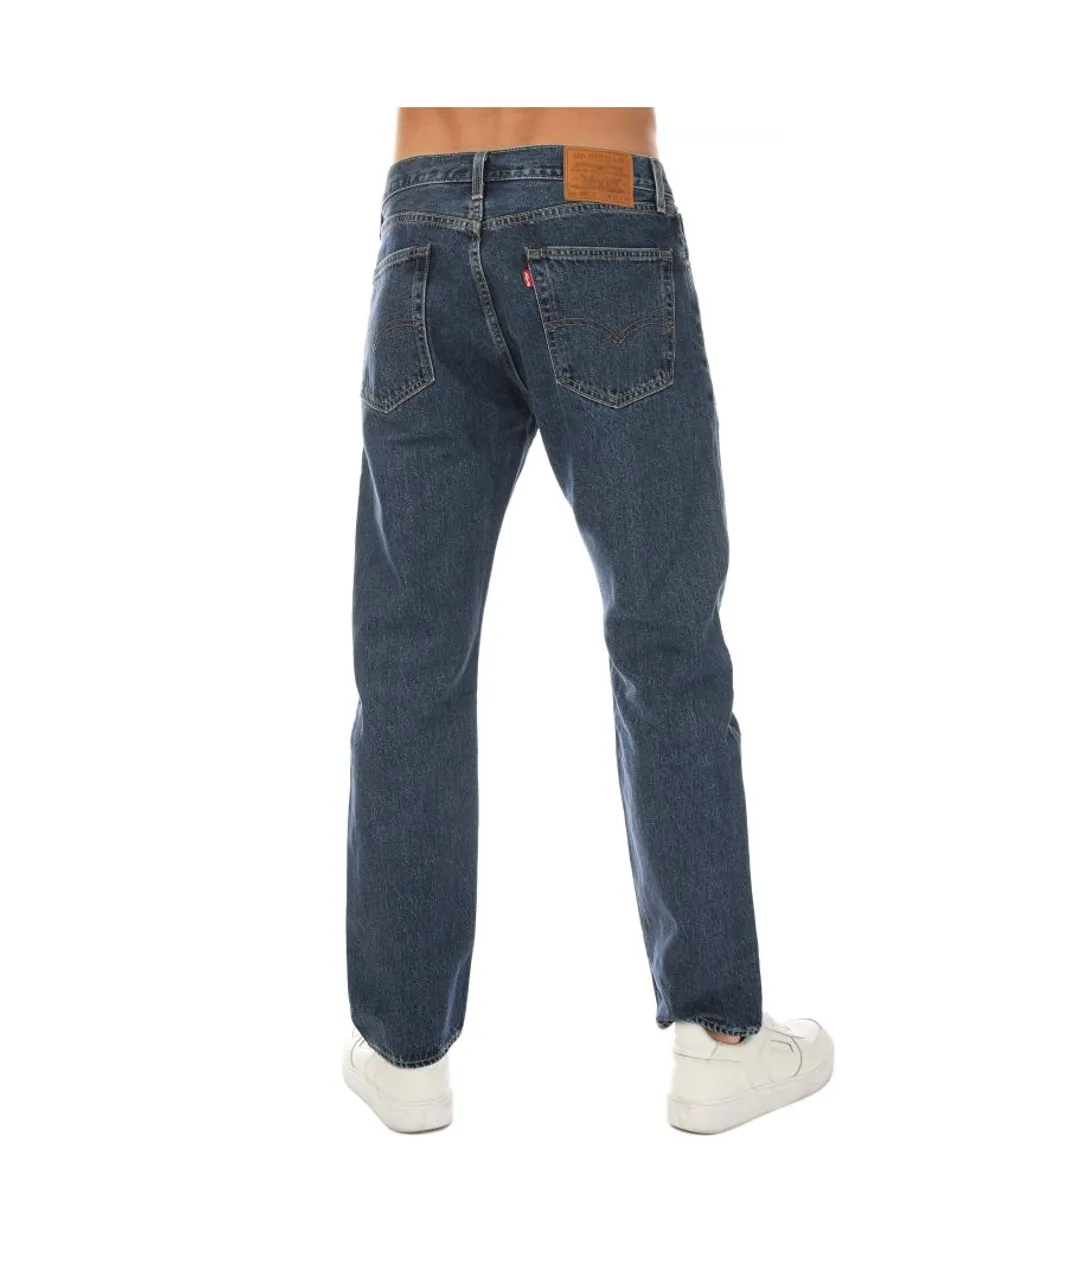 Levi's Mens Levis 551 Authentic Straight Rubber Worm Jeans in Denim - Blue Cotton